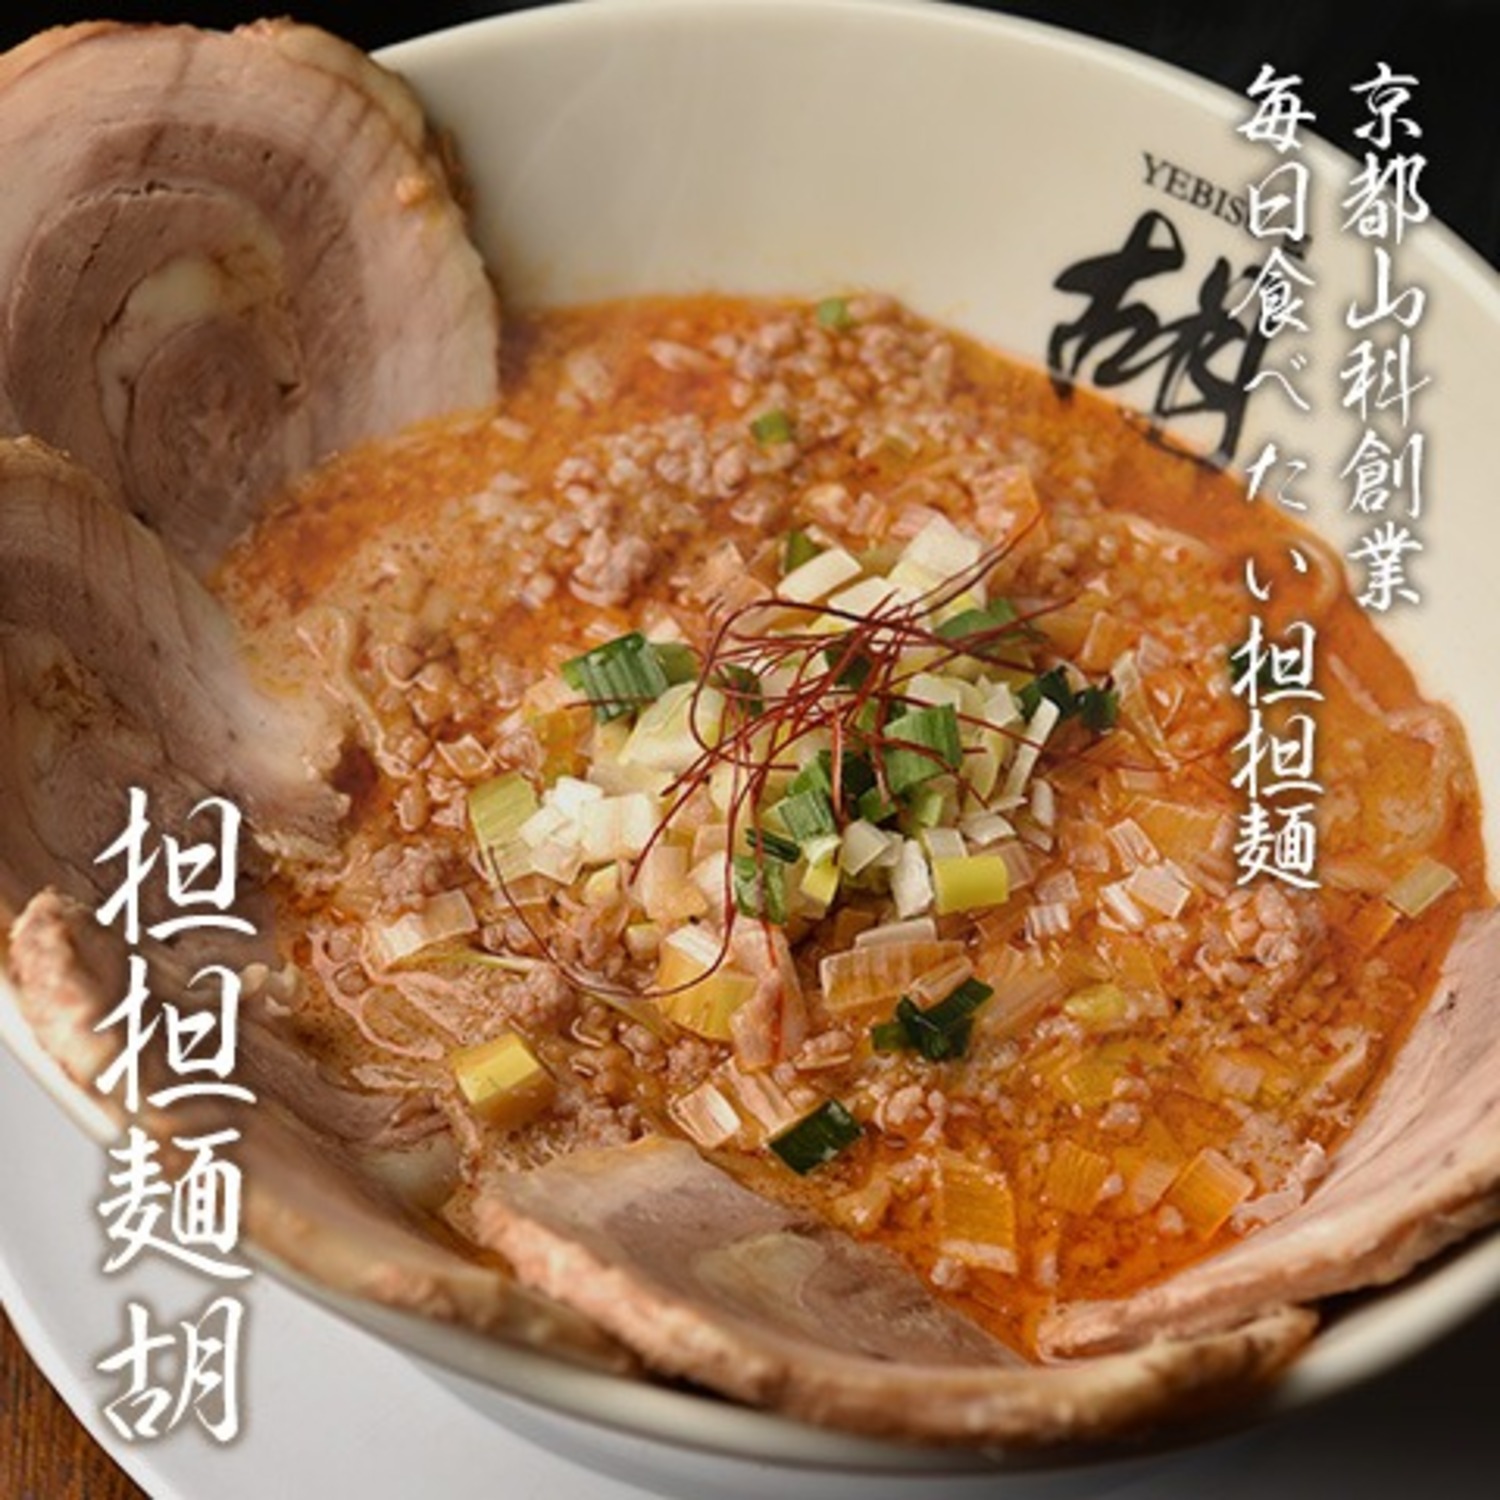 京都山科創業、毎日食べたい担担麺、担担麺胡